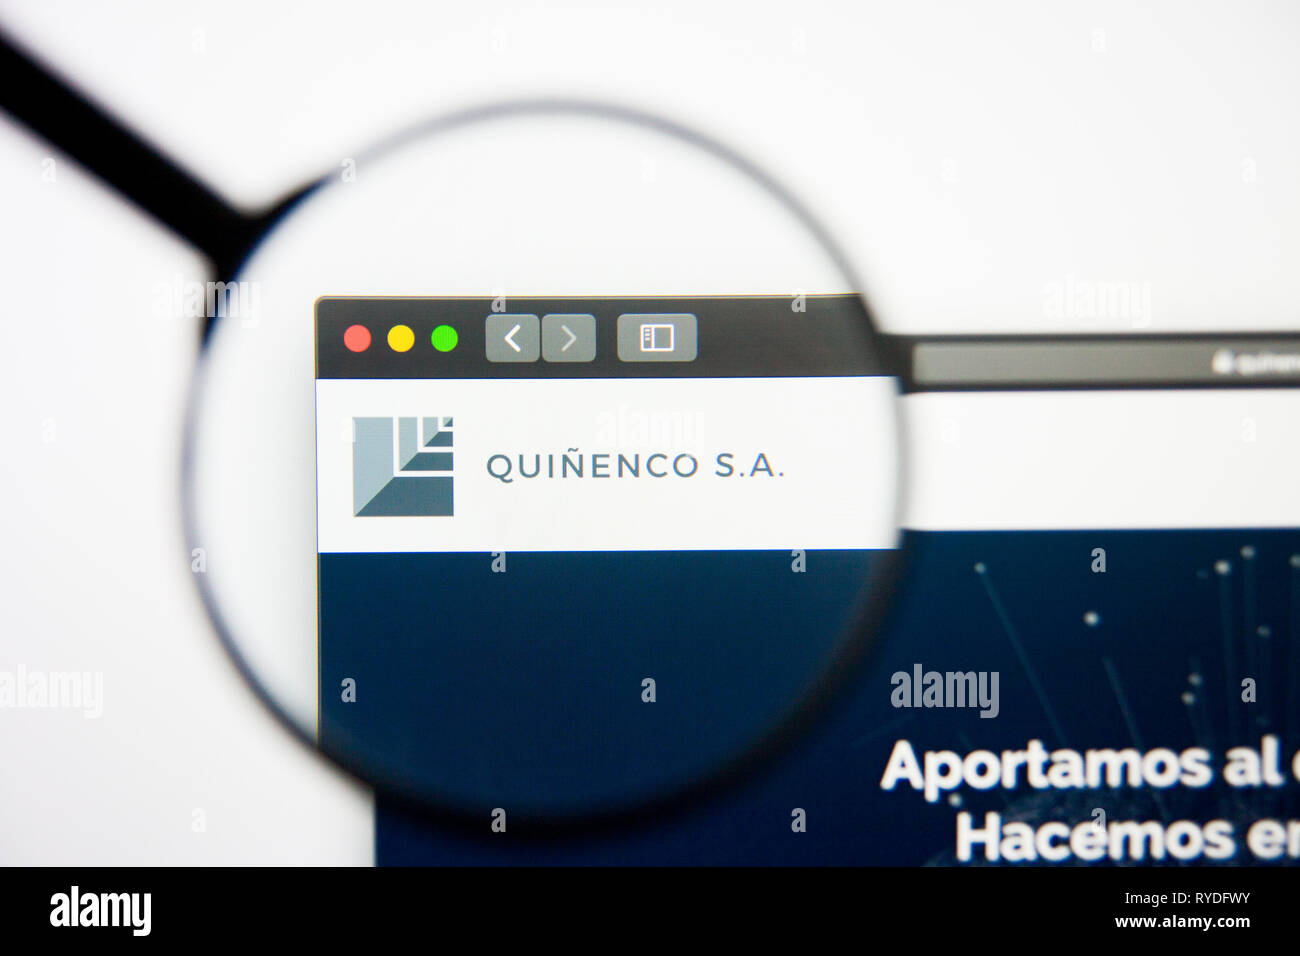 Los Angeles, Californie, USA - 5 mars 2019 : Quinenco accueil du site. Logo Quinenco visible sur l'écran d'affichage, de rédaction d'illustration Banque D'Images